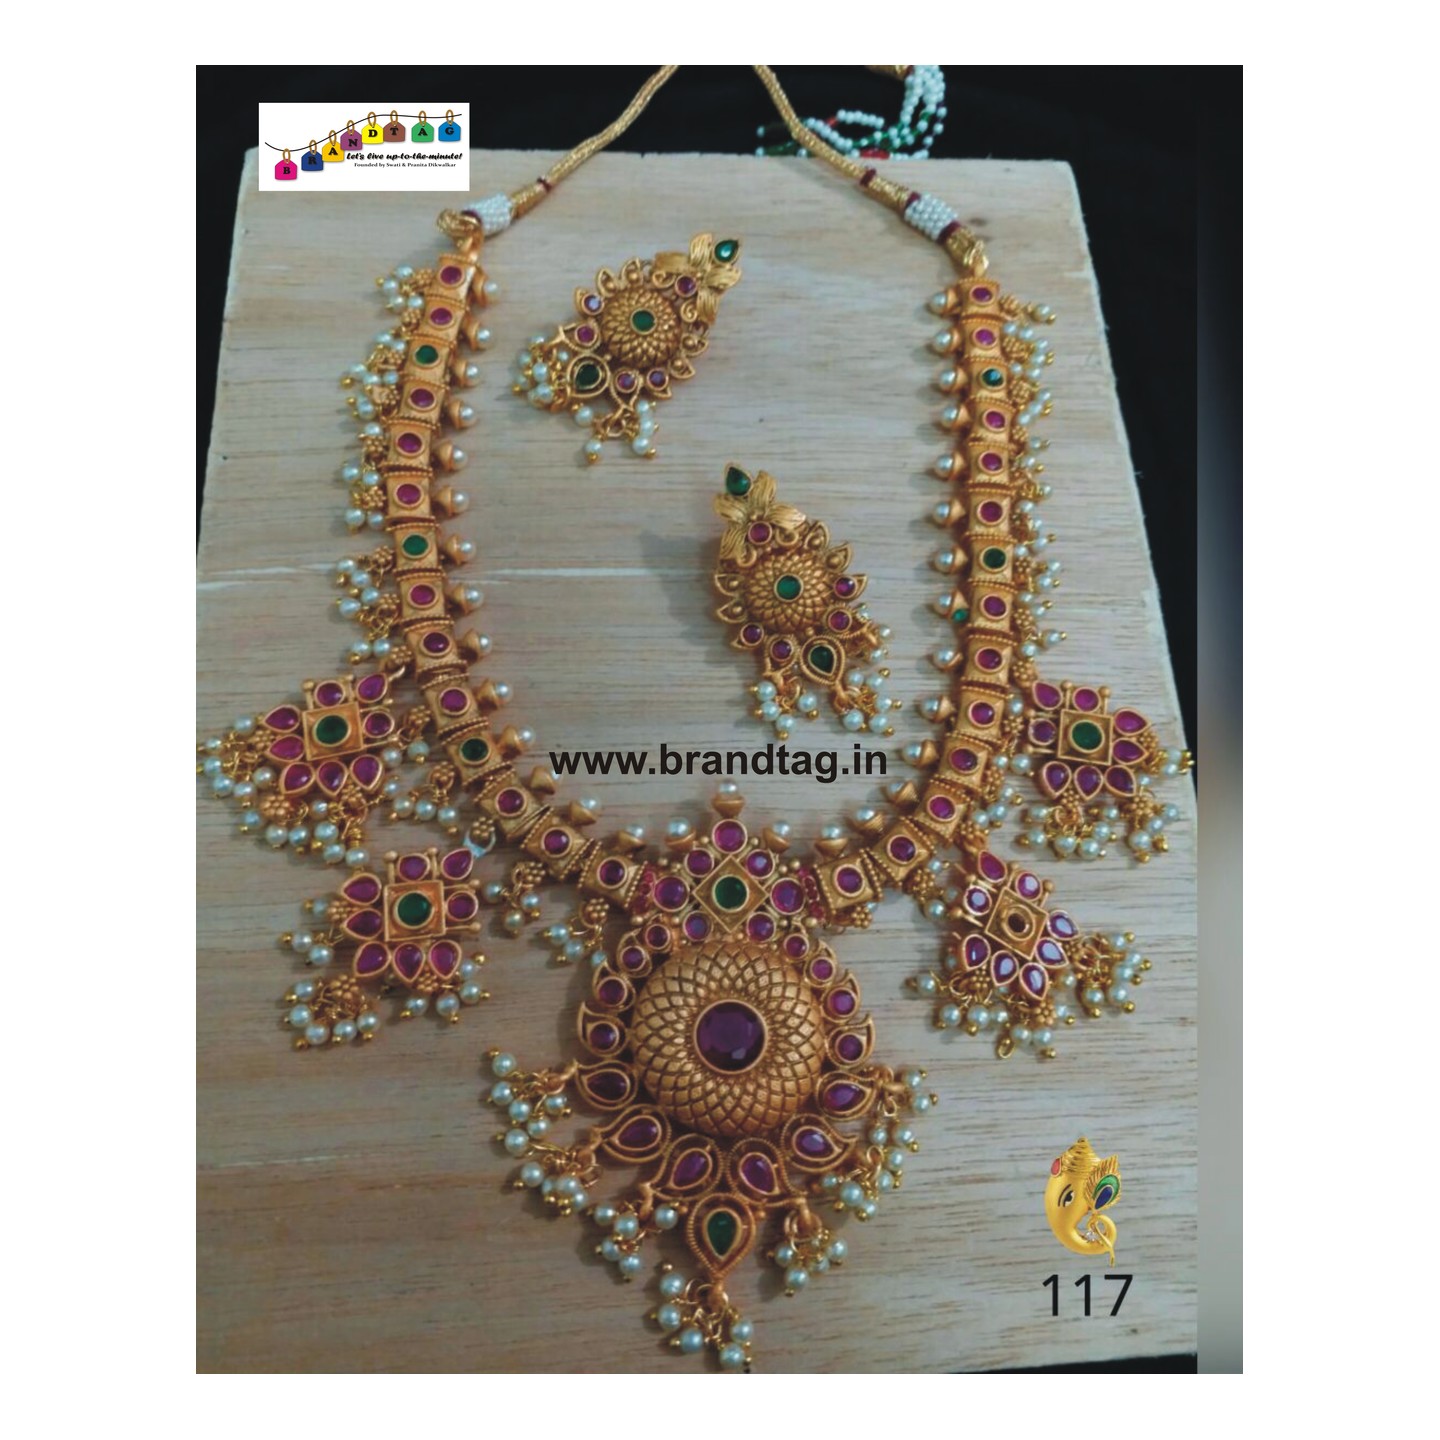 Striking Baahubali Long Necklace Set!!! 